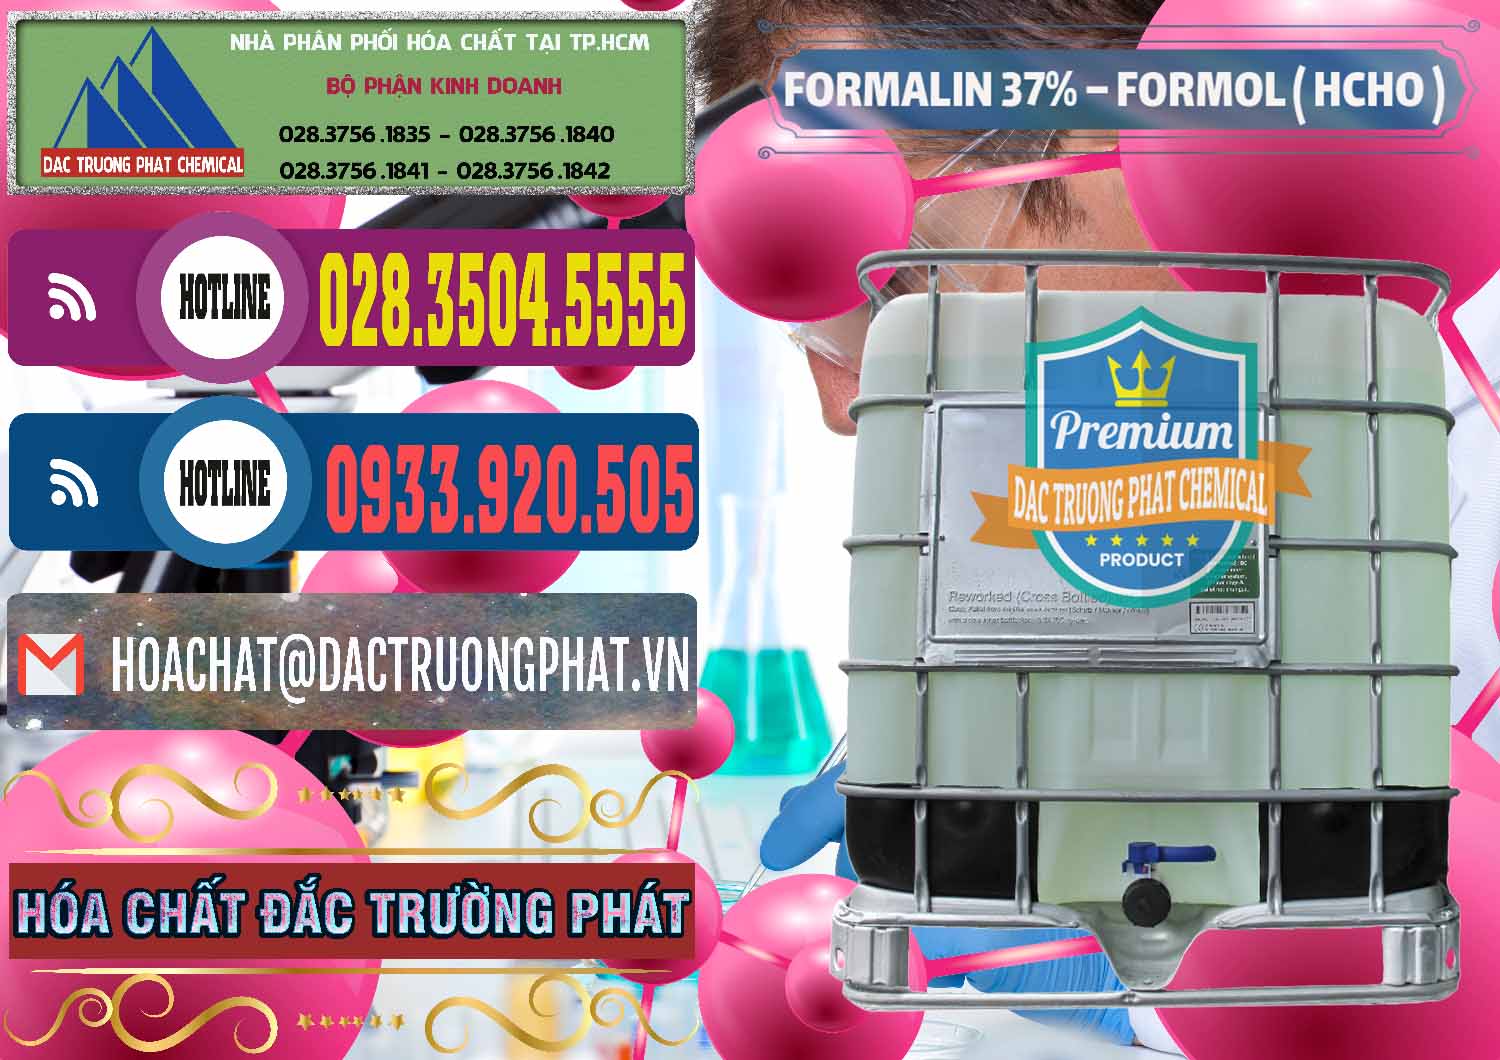 Cty chuyên bán và cung cấp Formalin - Formol ( HCHO ) 37% Việt Nam - 0187 - Nơi chuyên bán ( cung cấp ) hóa chất tại TP.HCM - muabanhoachat.com.vn